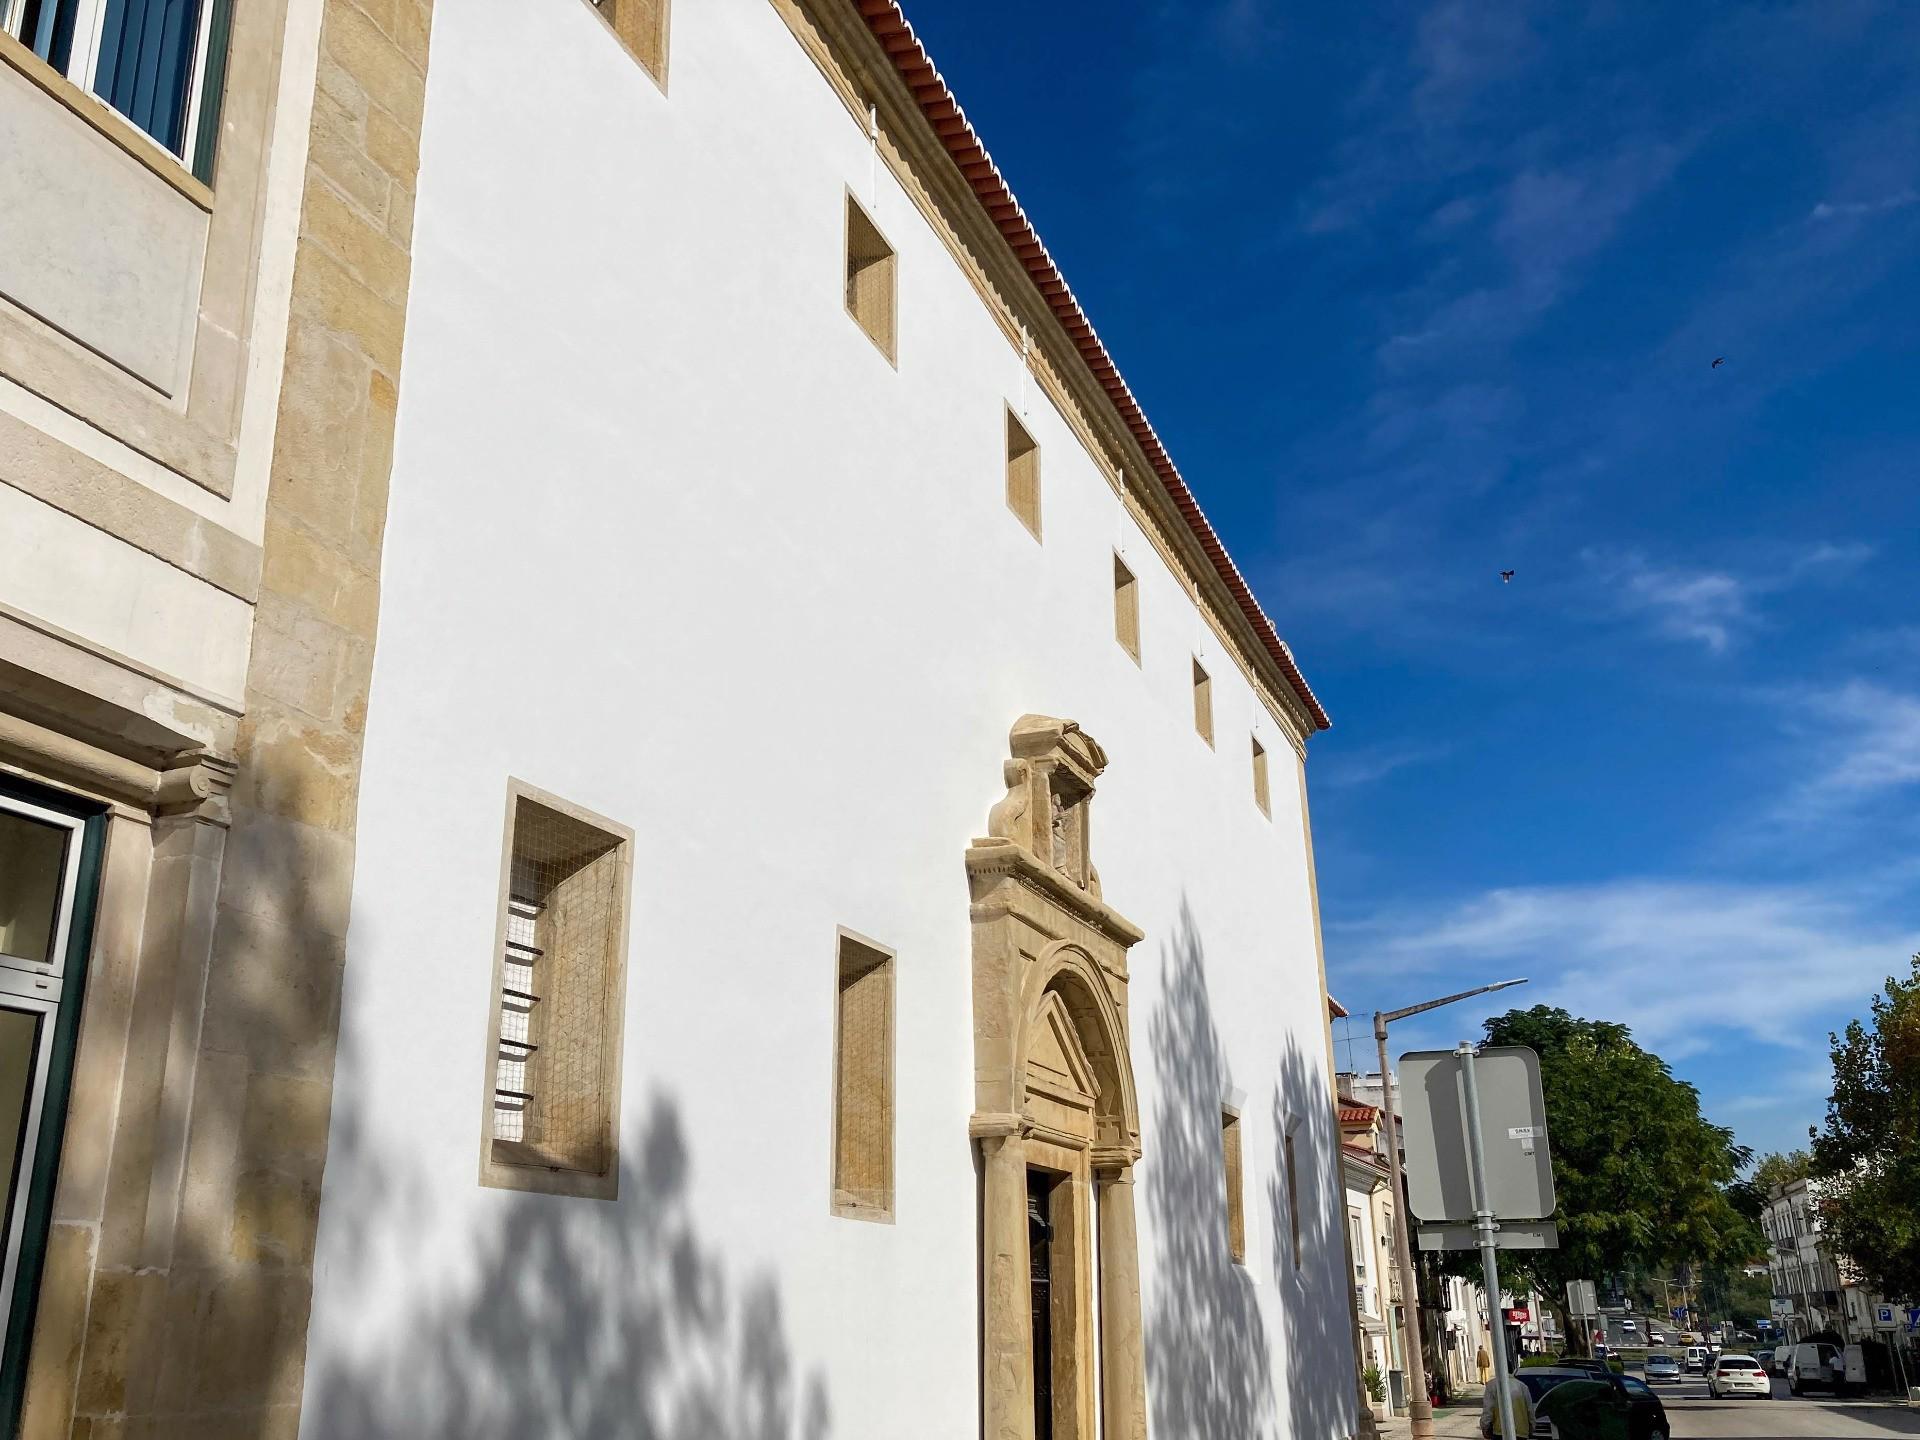 Fachada - também conhecida como Igreja da Misericórdia. A Santa Casa da Misericórdia de Tomar foi estabelecida pelo Rei D. Manuel I, no ano de 1510, sendo-lhe anexado o Hospital de Nossa Senhora da Graça.